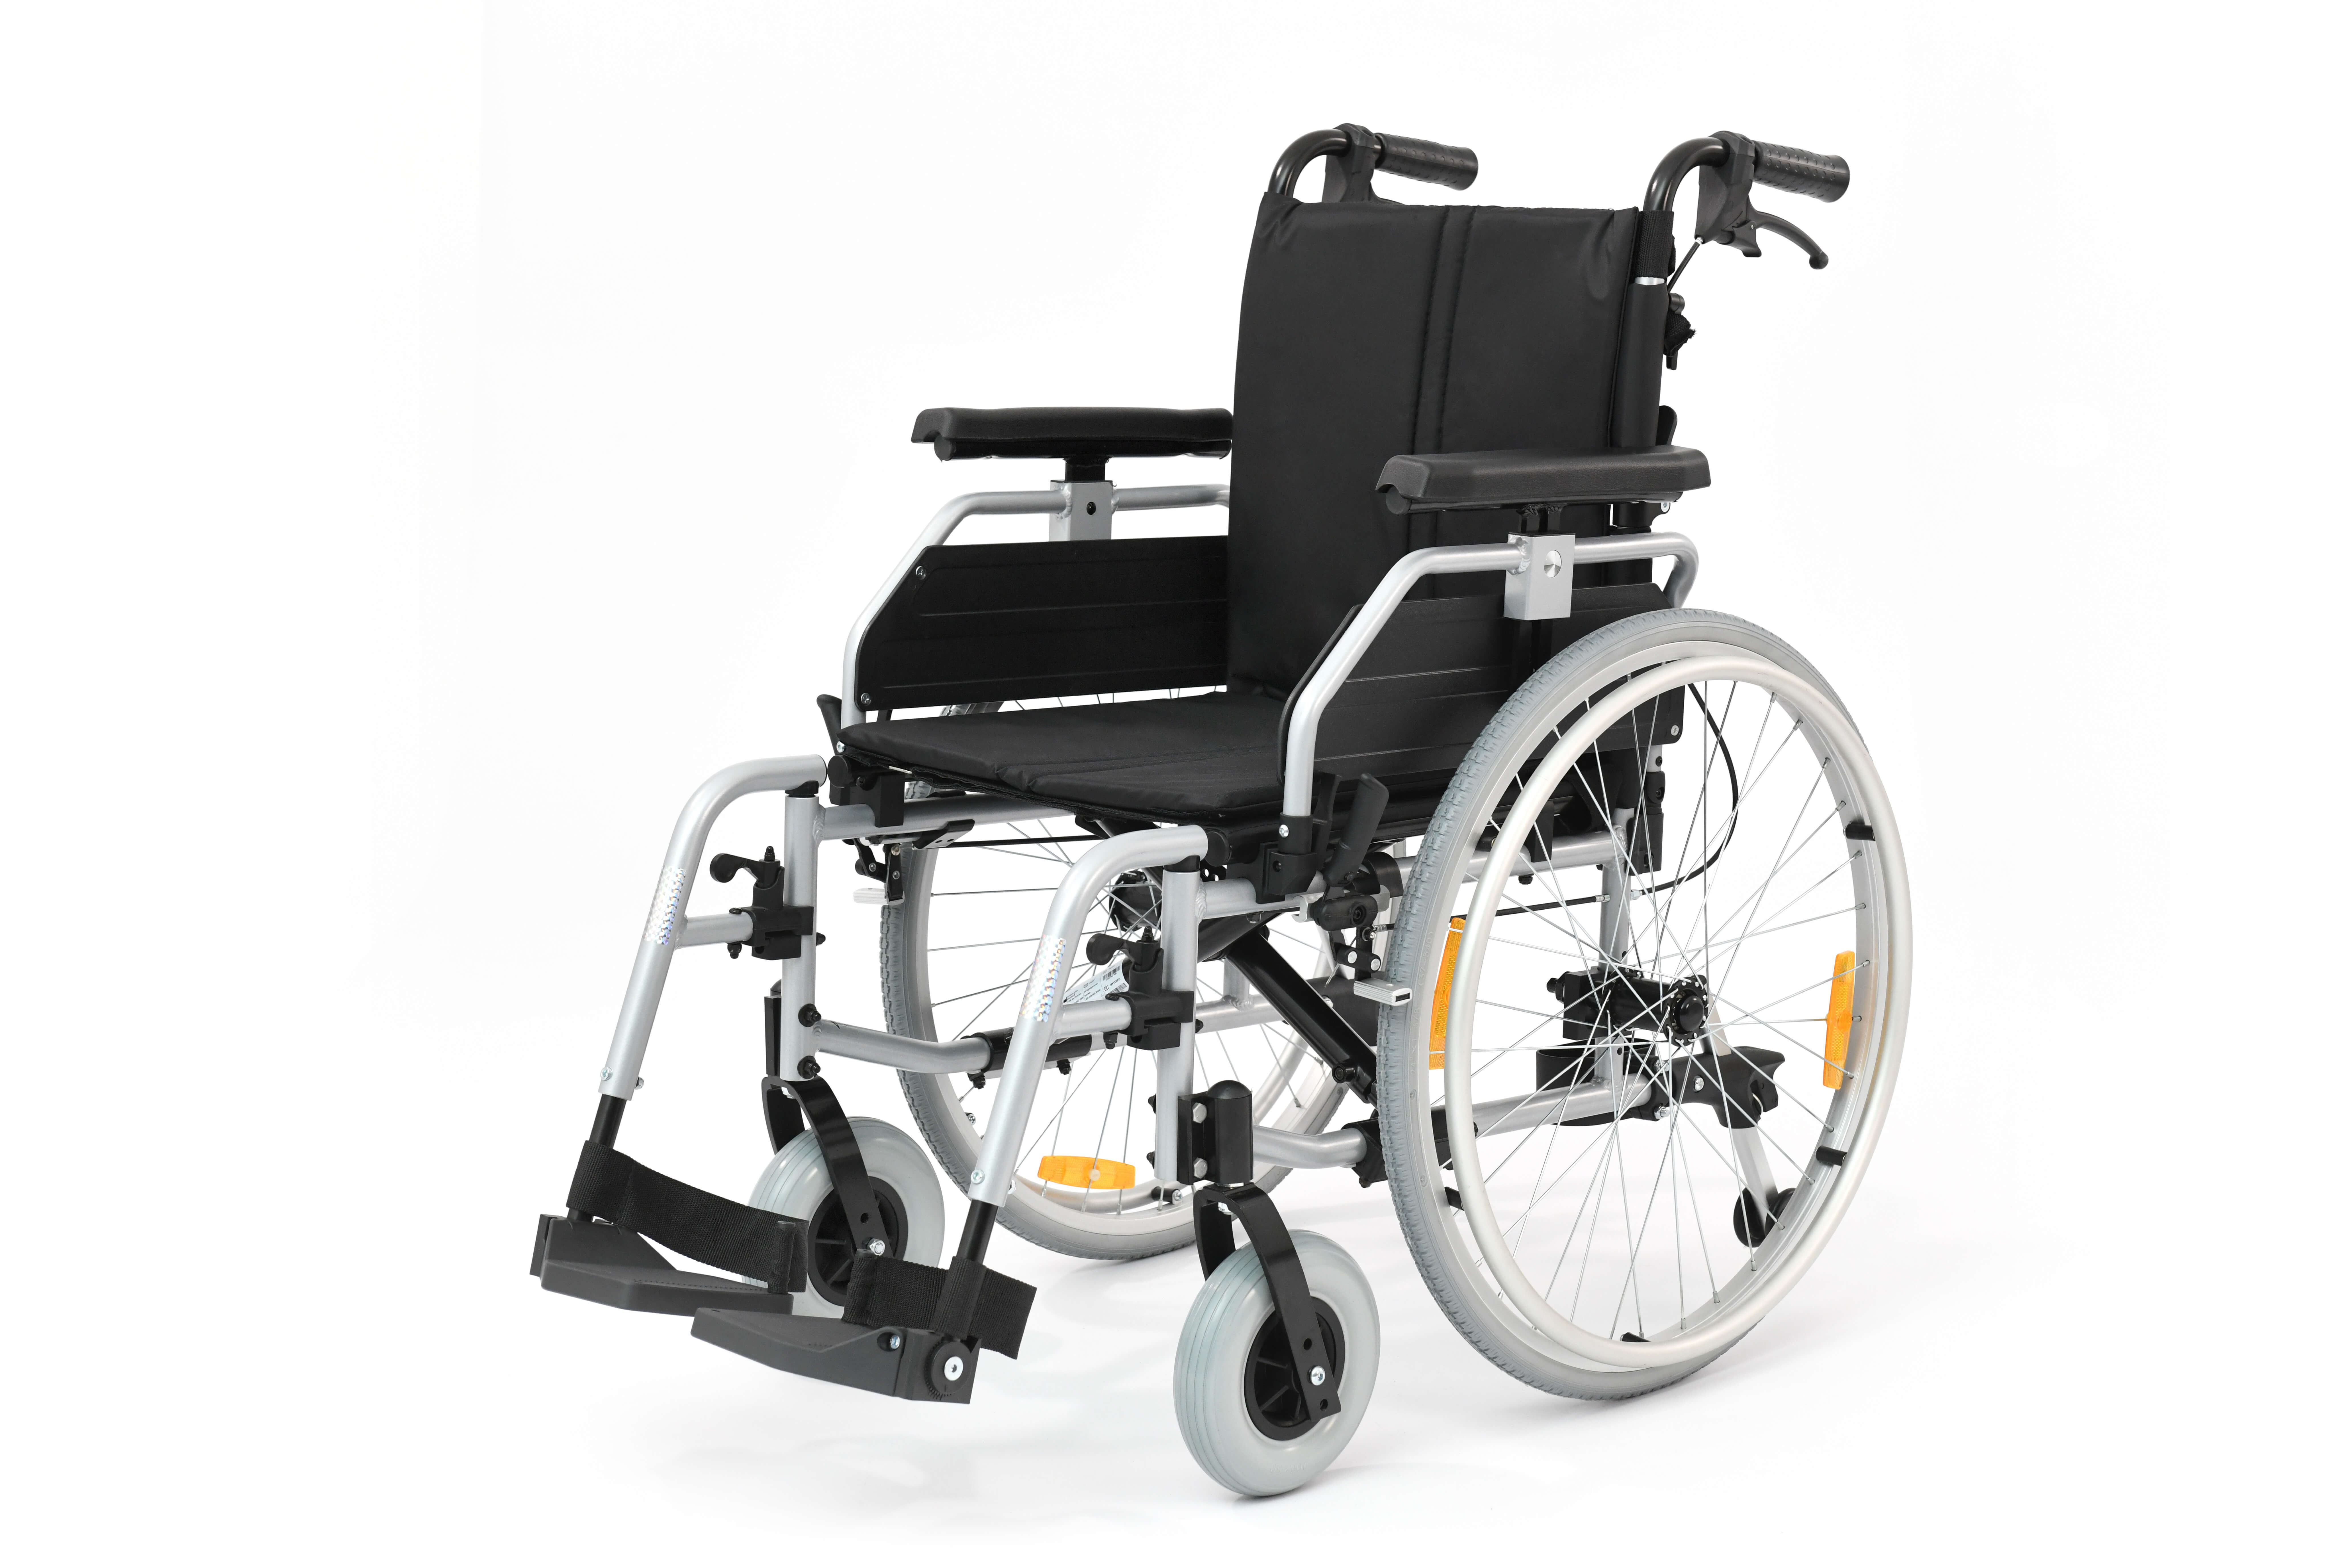 VARIOXX² lightweight aluminum wheelchair